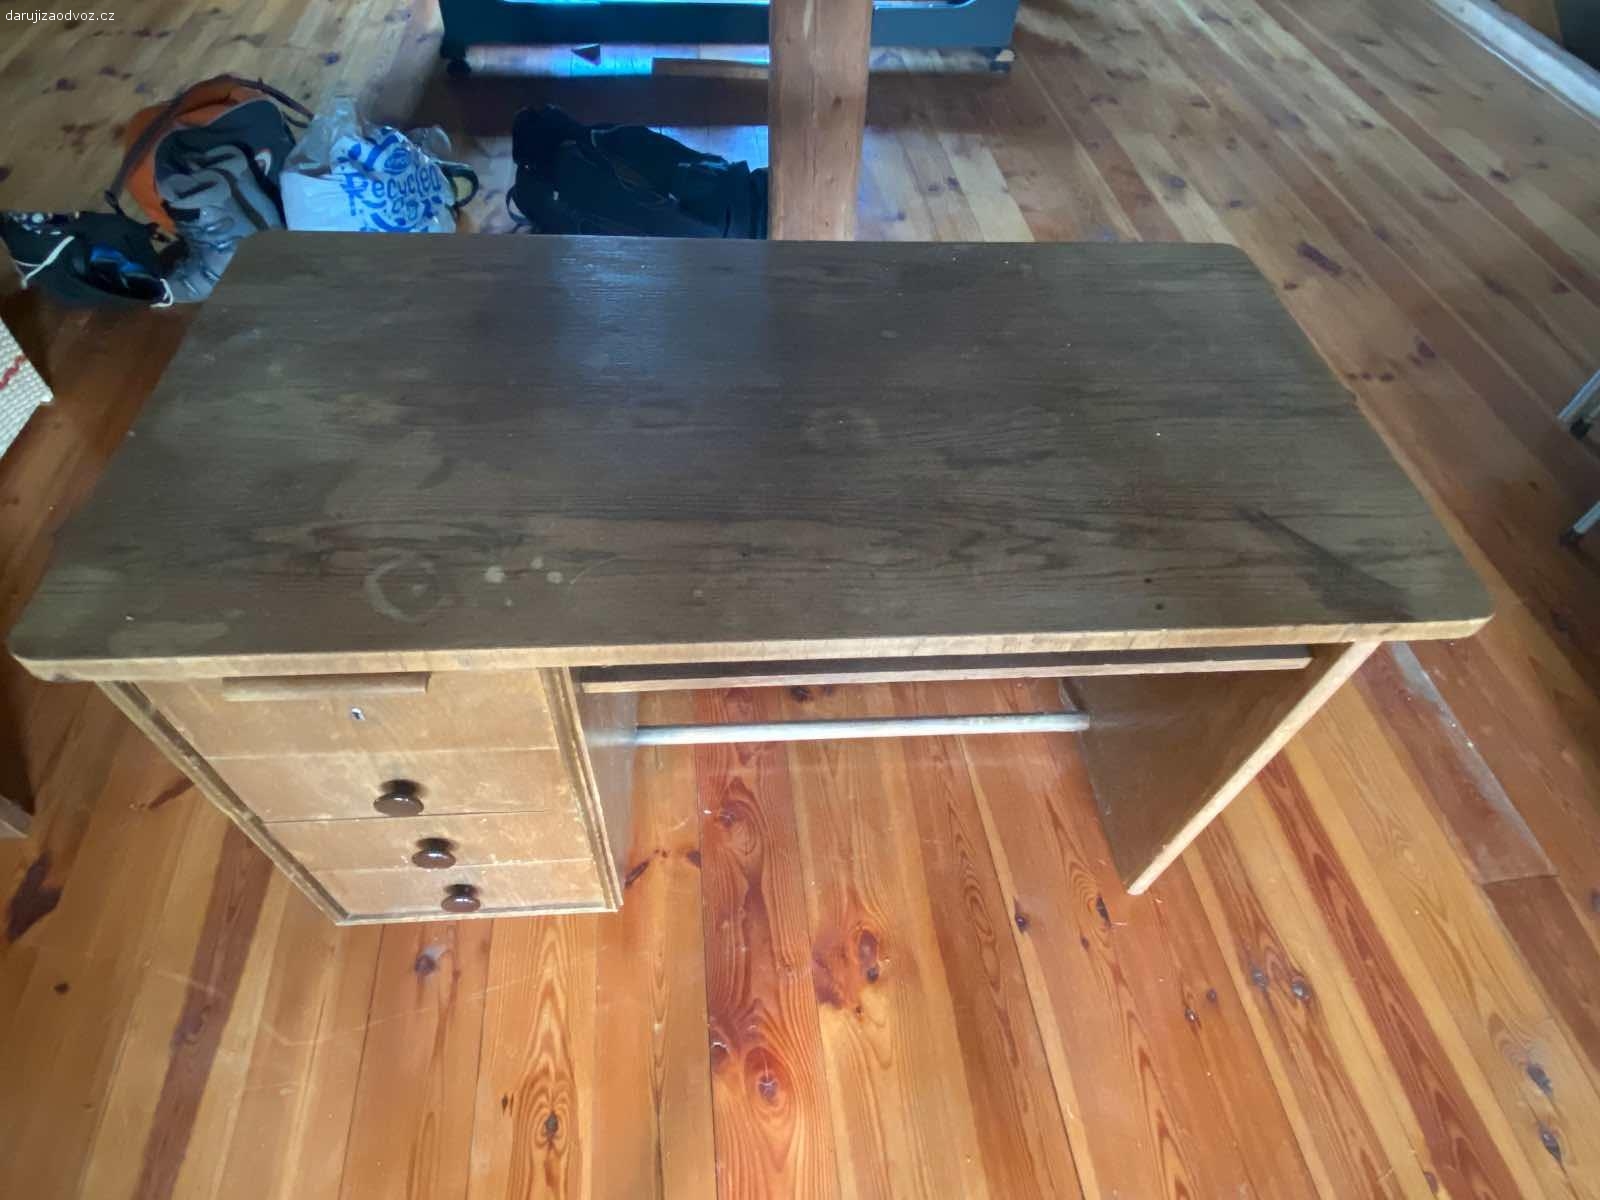 Dva psací stoly za odvoz. Daruji za odvoz dva zachovalé dřevěné psací stoly. Rozměry u obou stejné, viz foto.
Čím dřív, tím líp.